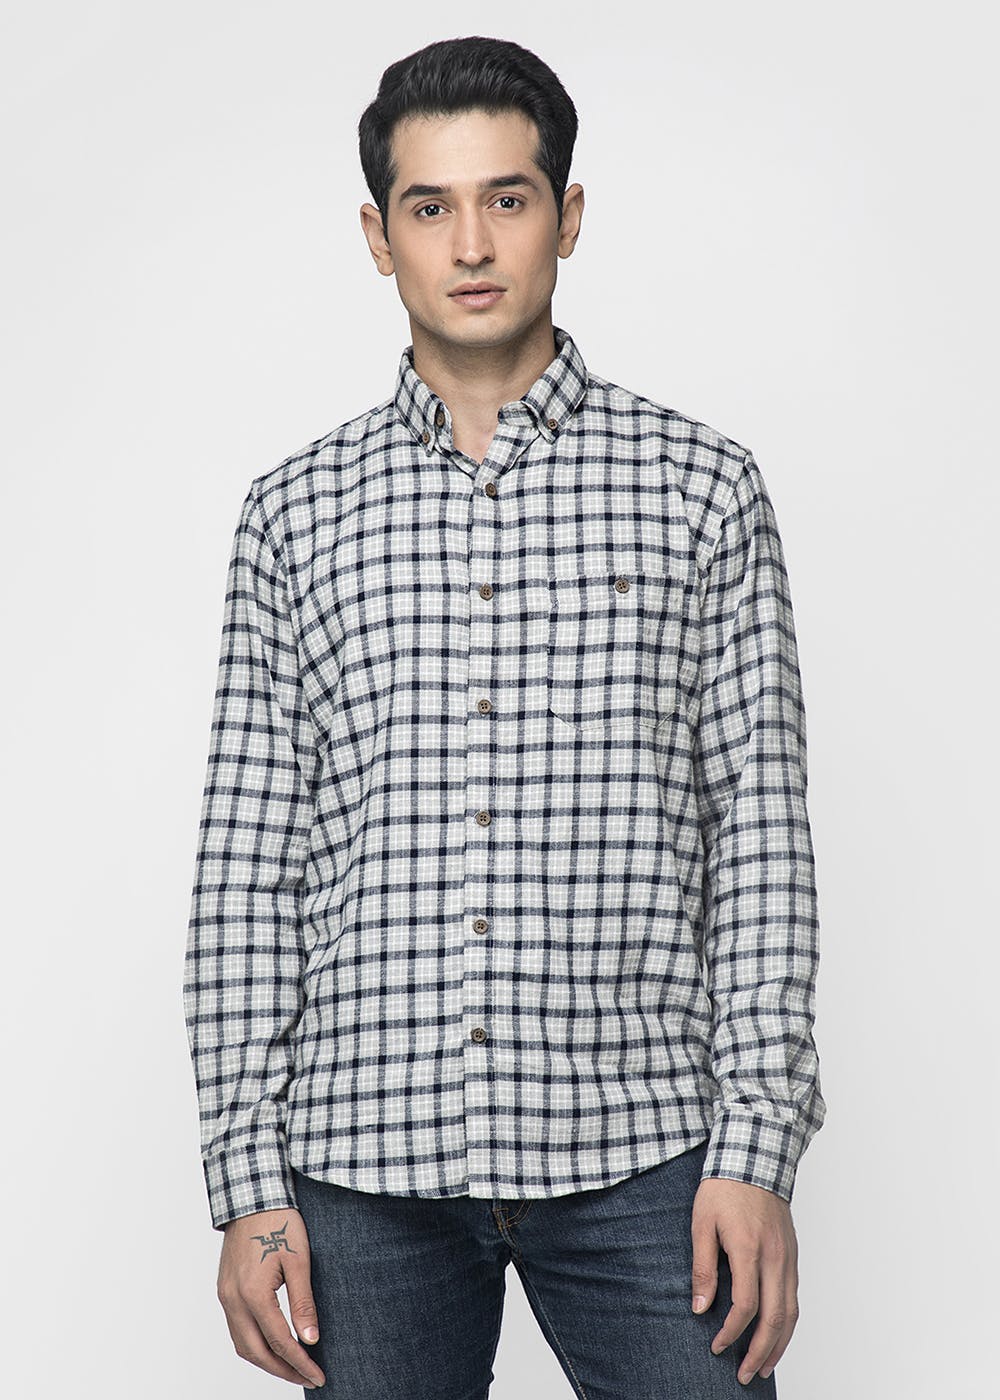 Get Micro Checkered Grey Shirt at ₹ 899 | LBB Shop